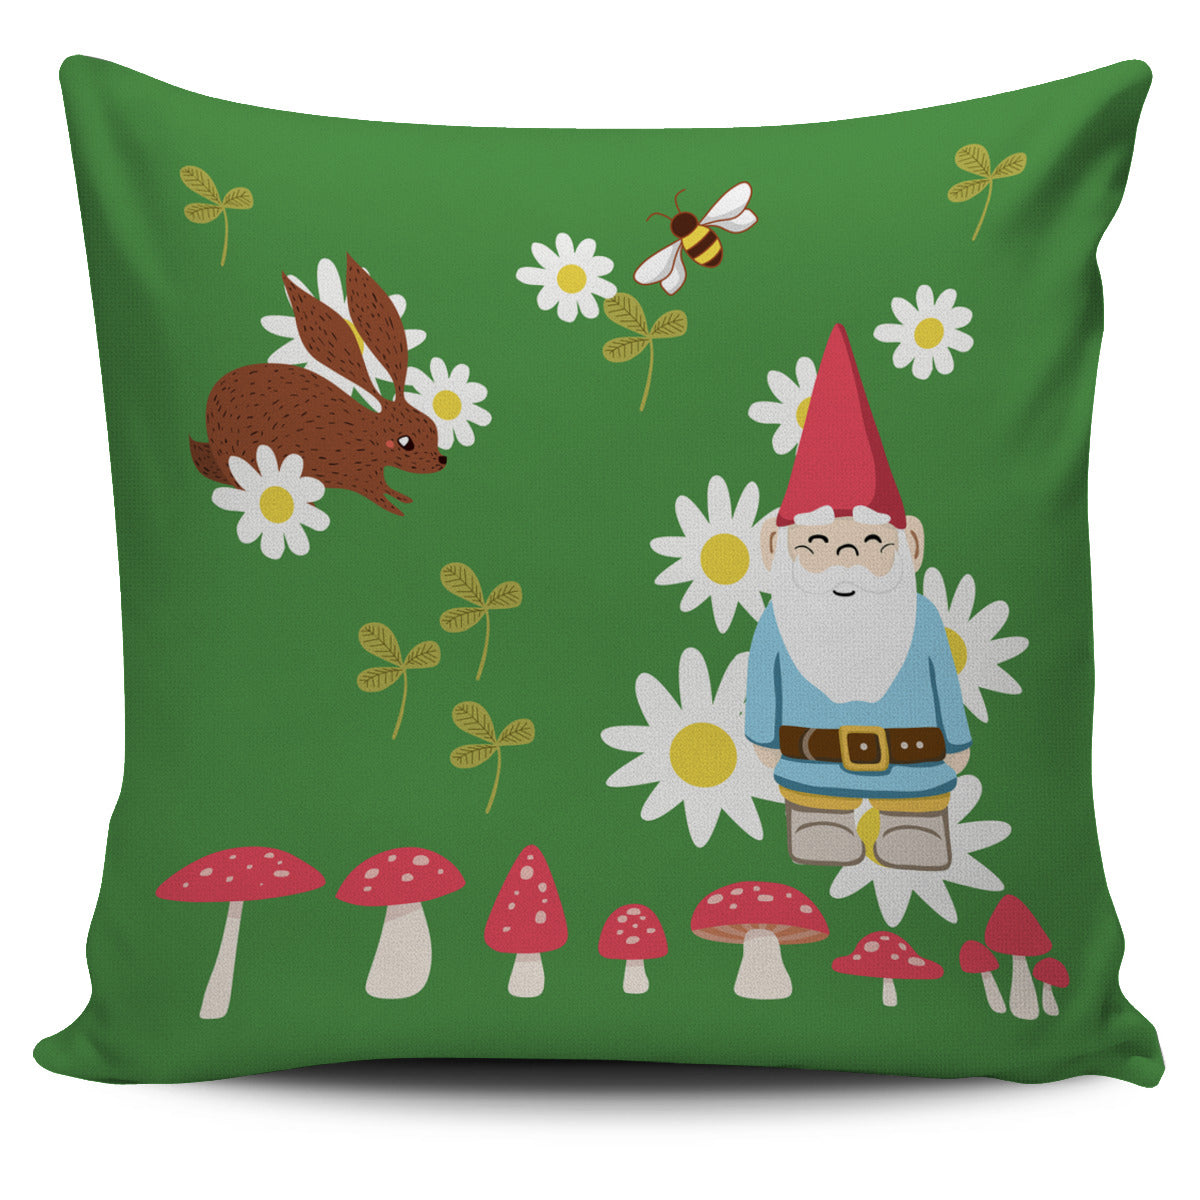 Gnome Fairy Garden Pillow Cover